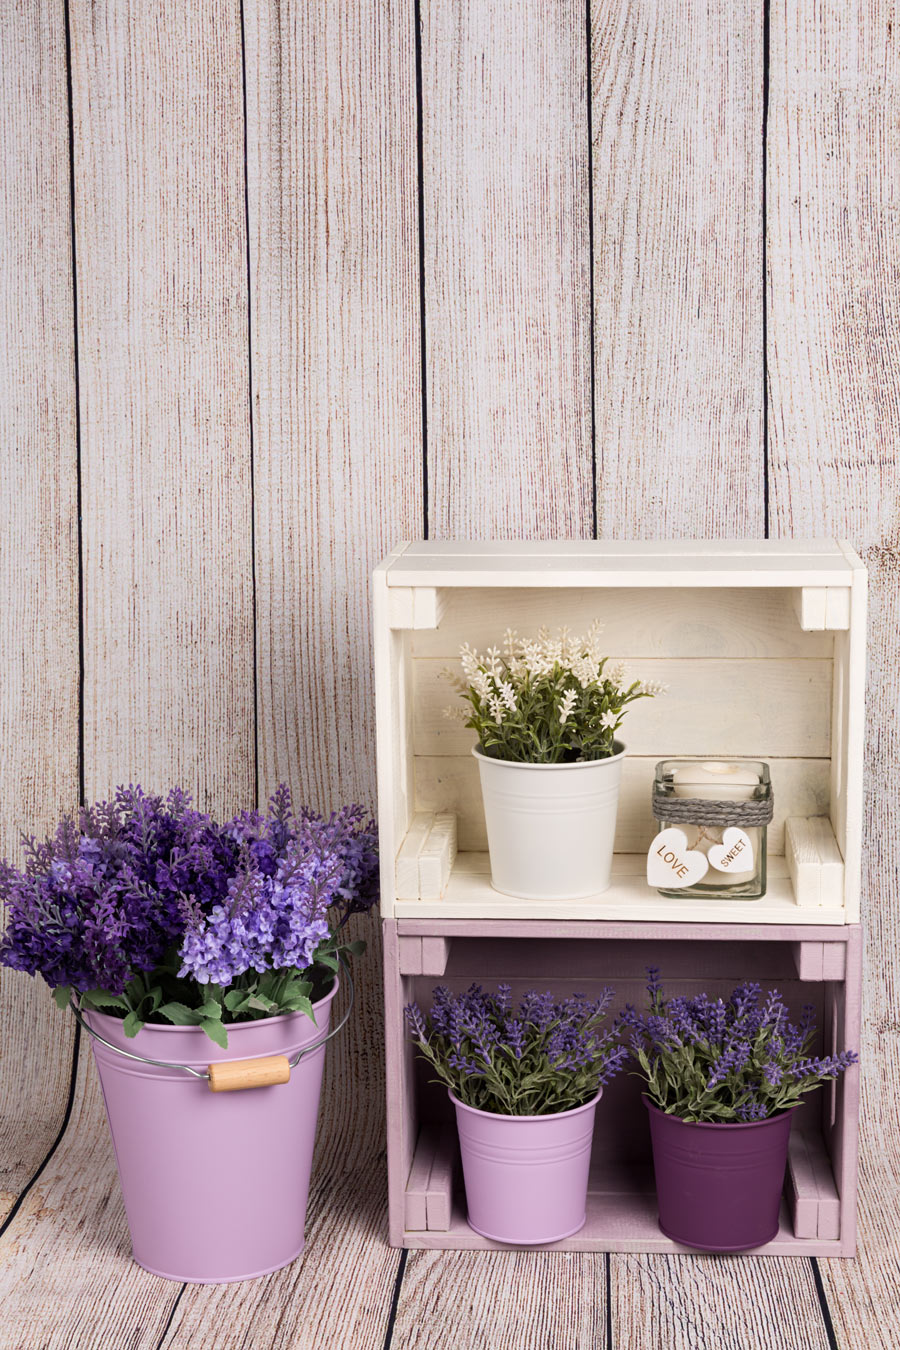 2 caisses en bois peintes en violet et en blanc pour une belle déco printemps.